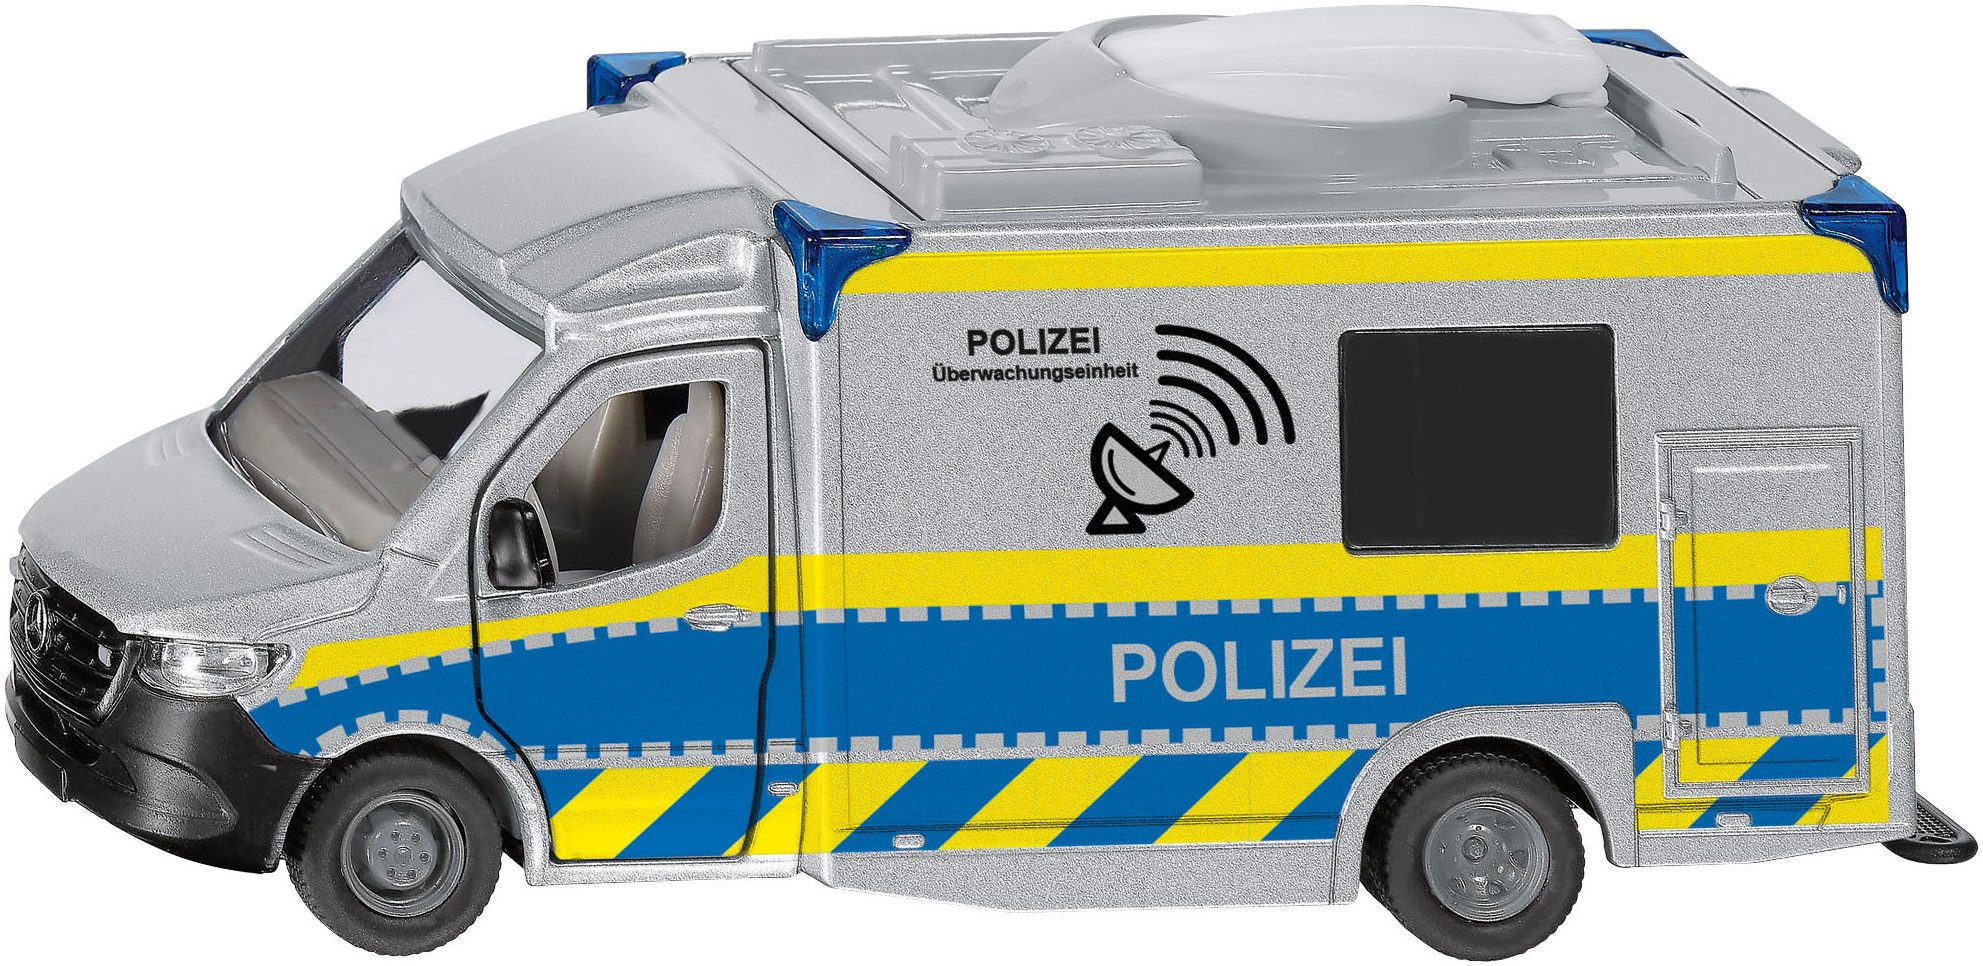 Siku Spielzeug-Polizei Siku Super, Mercedes-Benz Sprinter Polizei (2301)